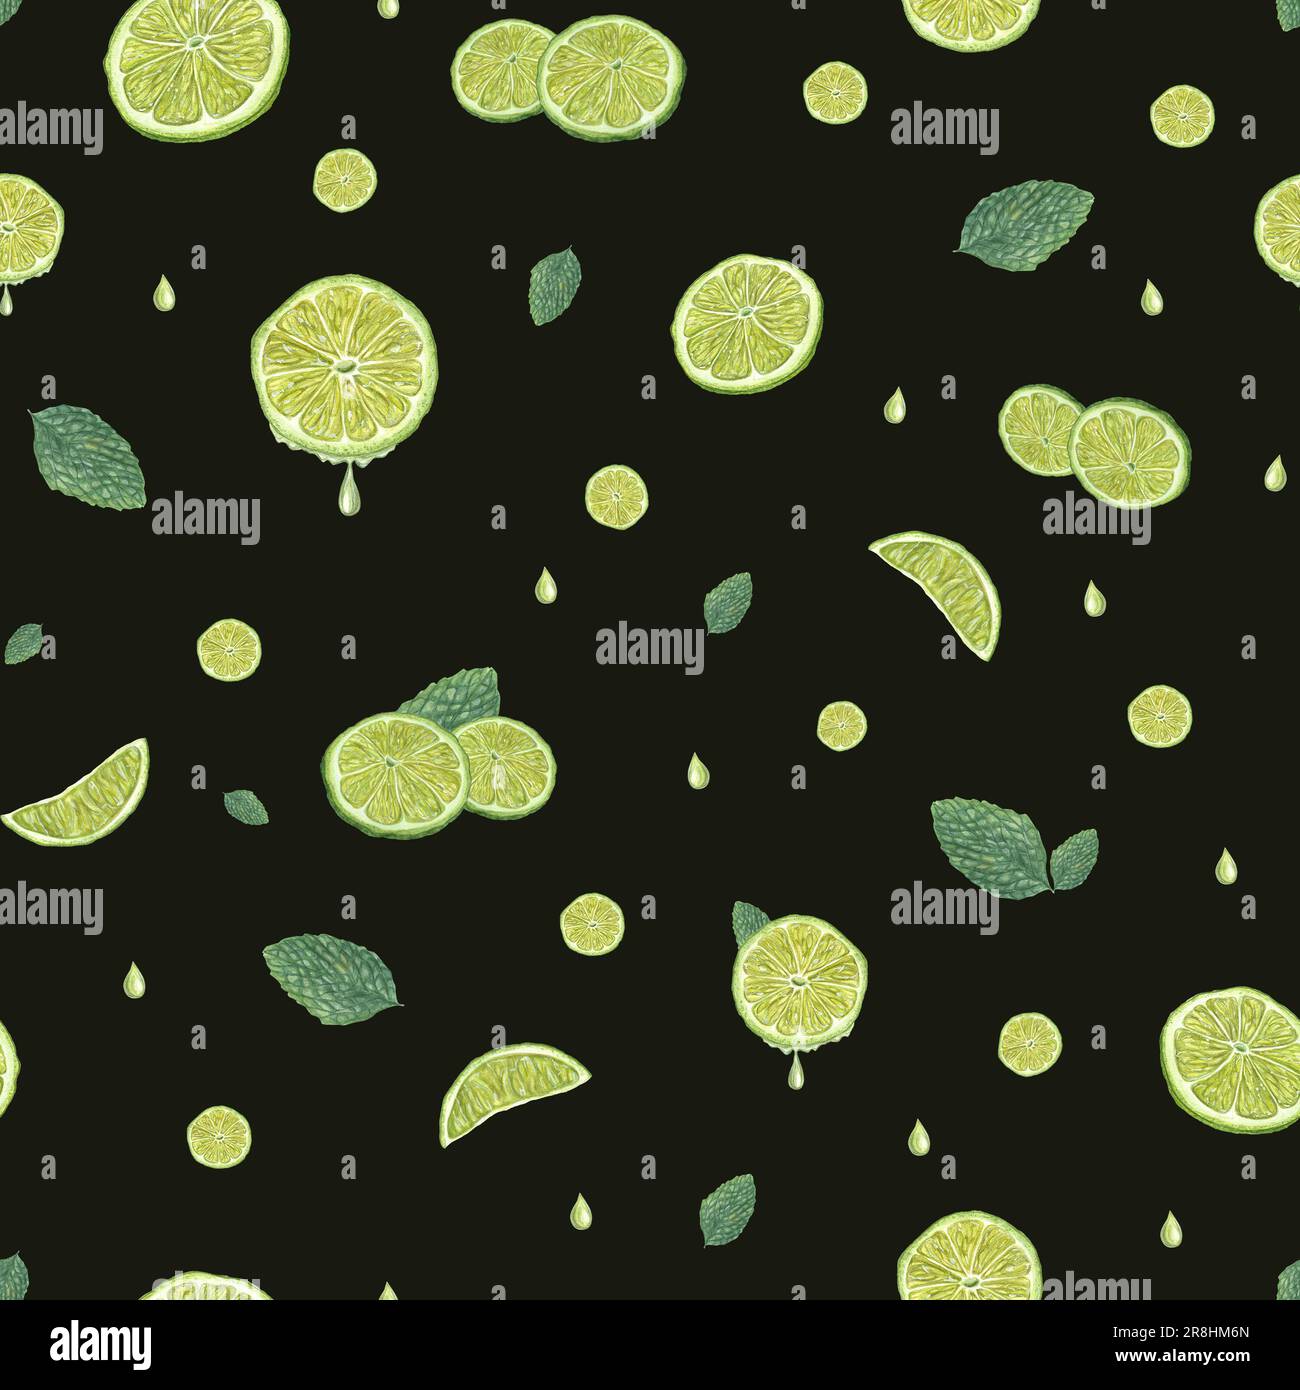 Tranches de citron vert avec feuilles de menthe verte isolées sur fond noir. Motif sans couture pour enfants et décoration d'intérieur, textile, imprimé. Aquarelle botanique Banque D'Images